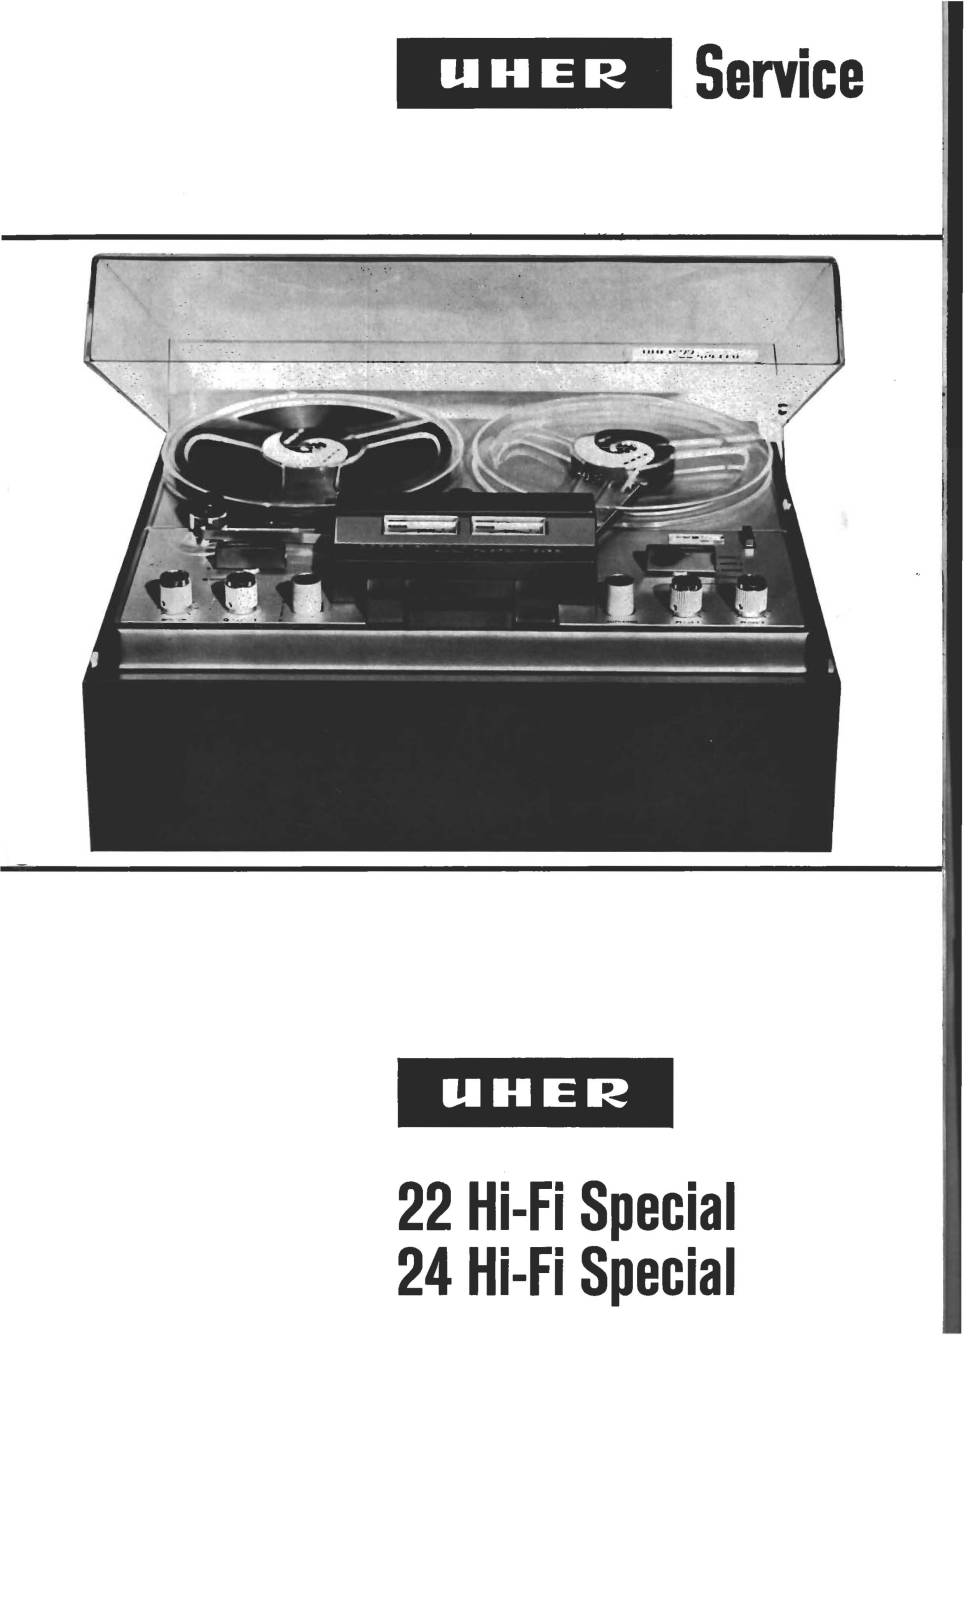 Uher 24 (Hi-Fi Special)